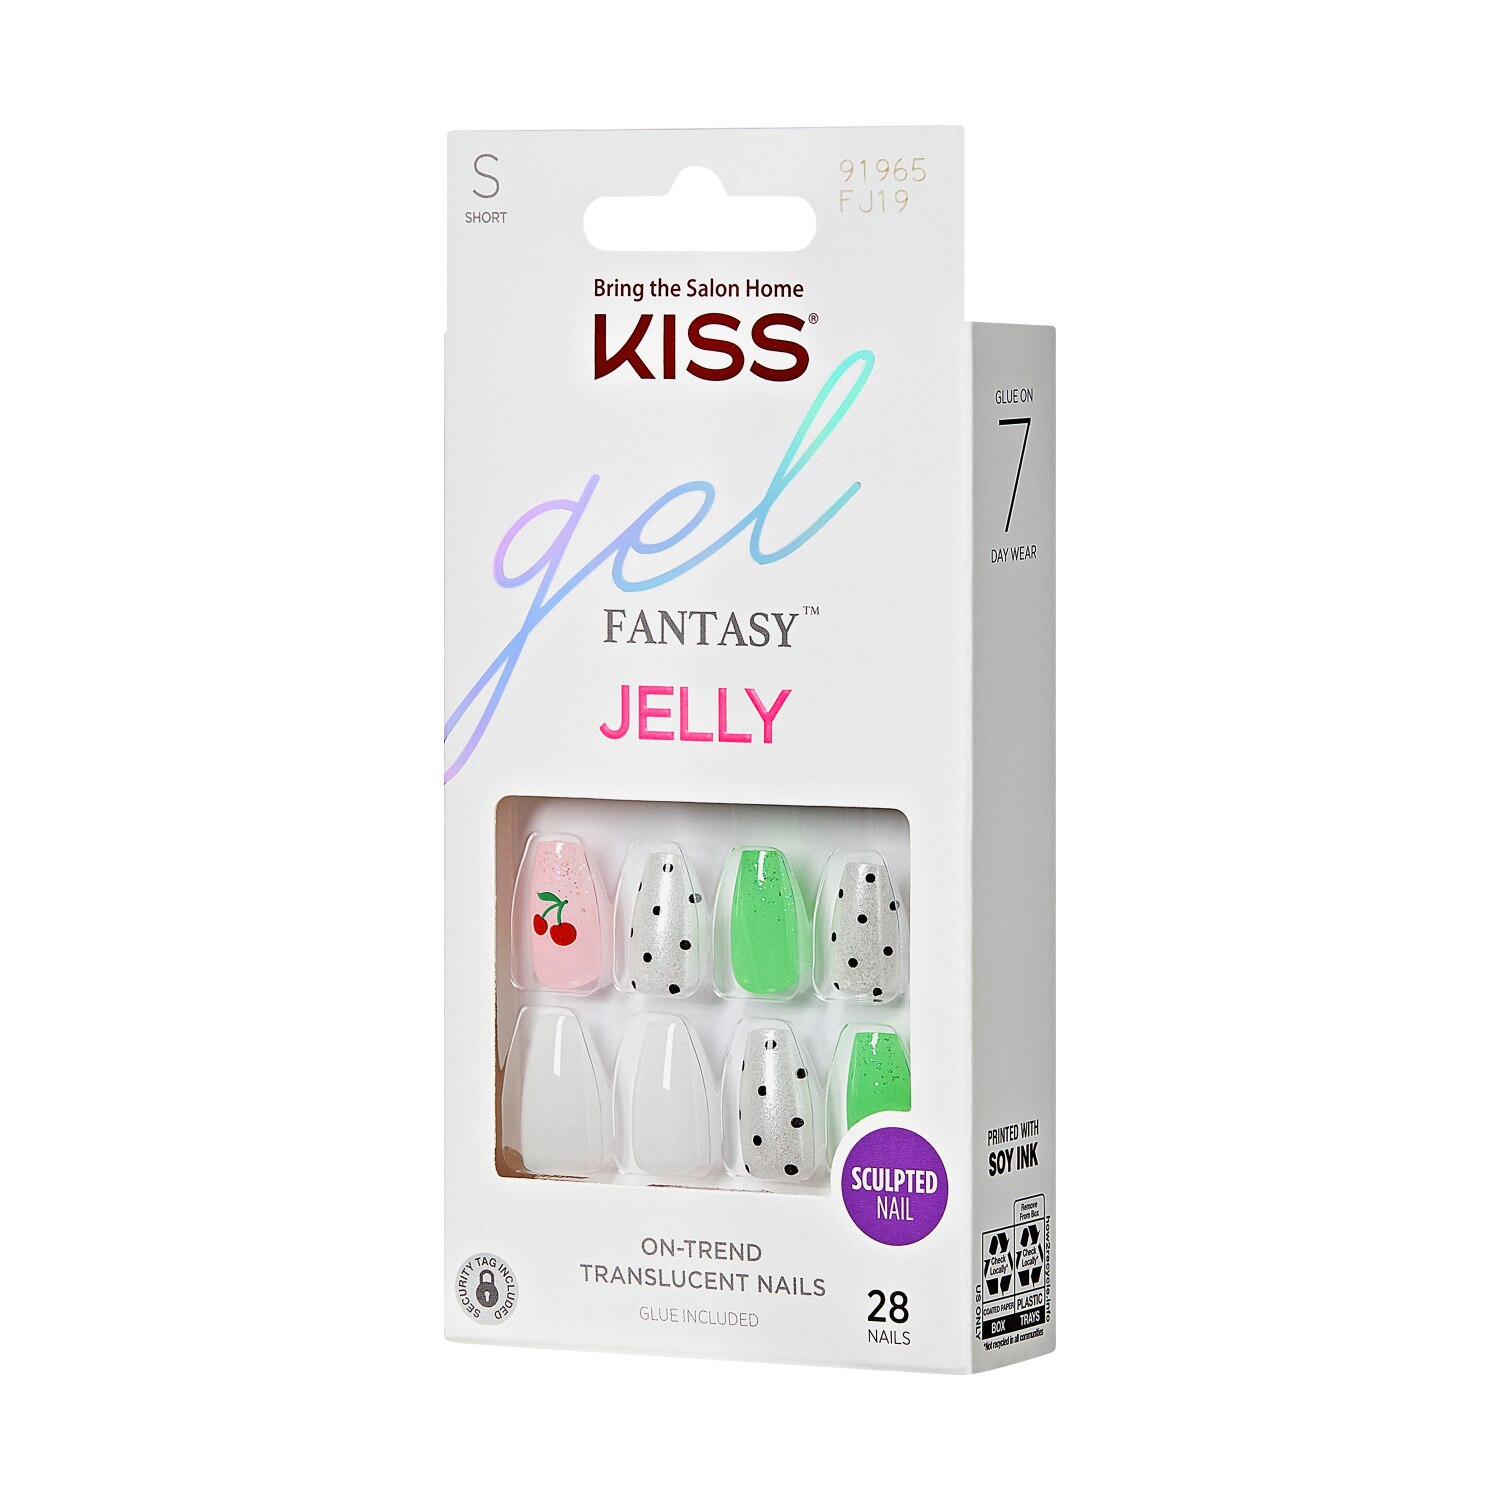 KISS Gel Fantasy Jelly, Jelly Baby , CVS